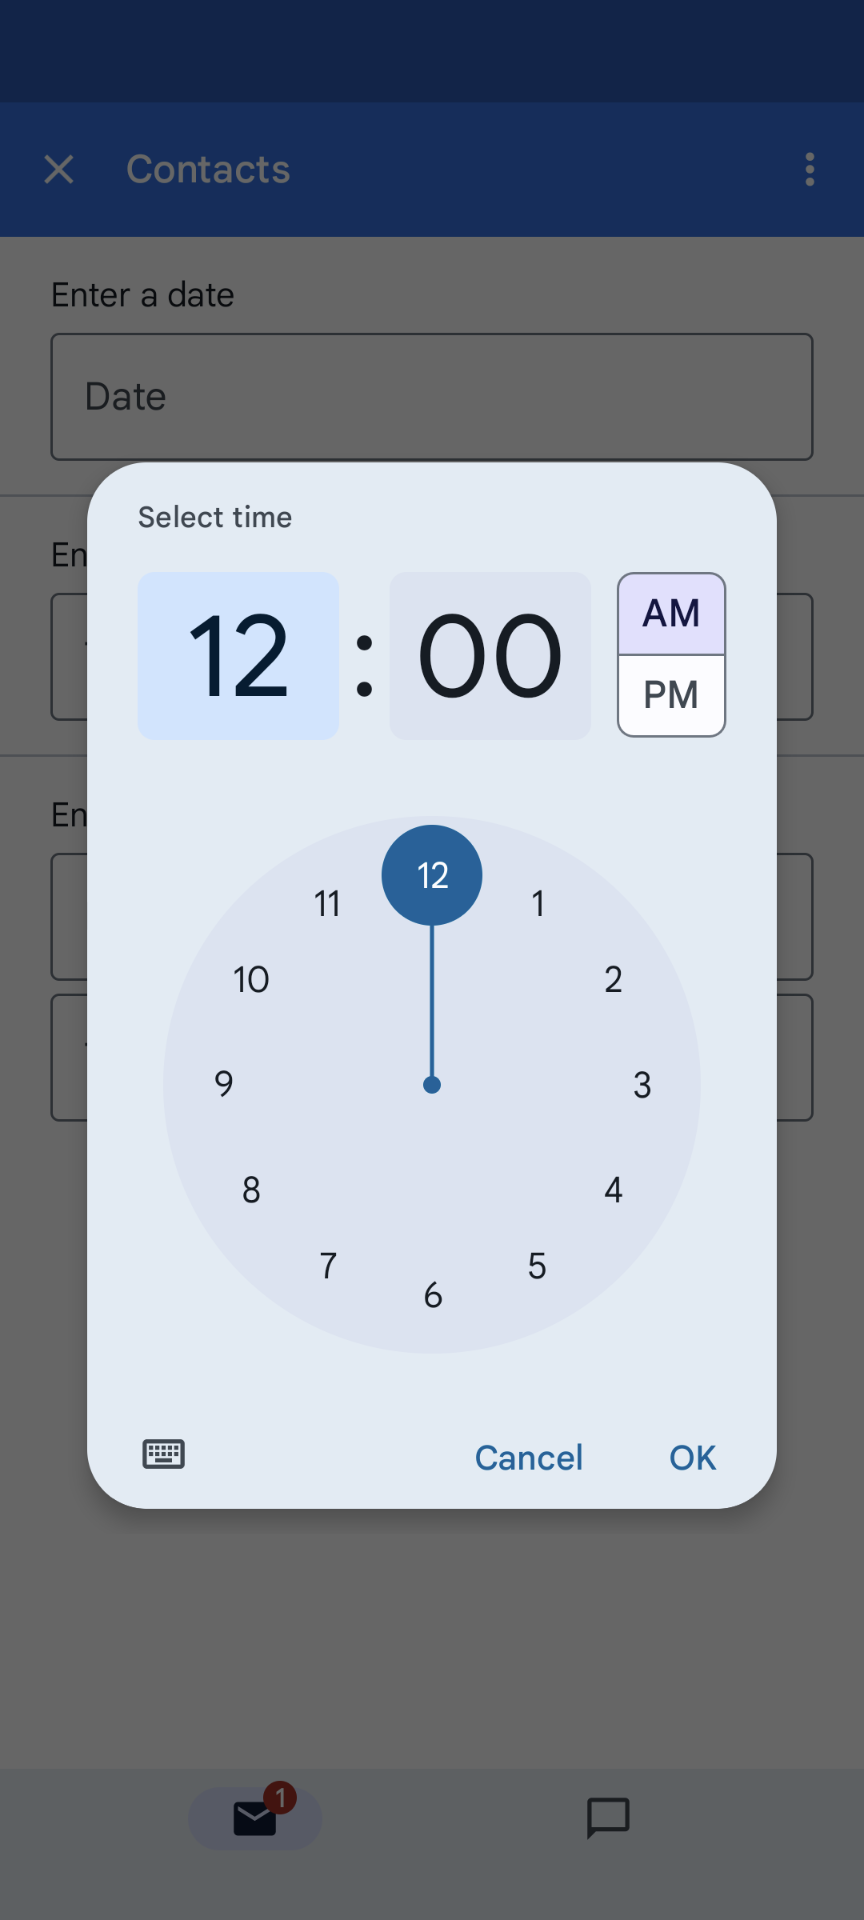 Beispiel für die Auswahl der Zeitauswahl in der mobilen Zeit